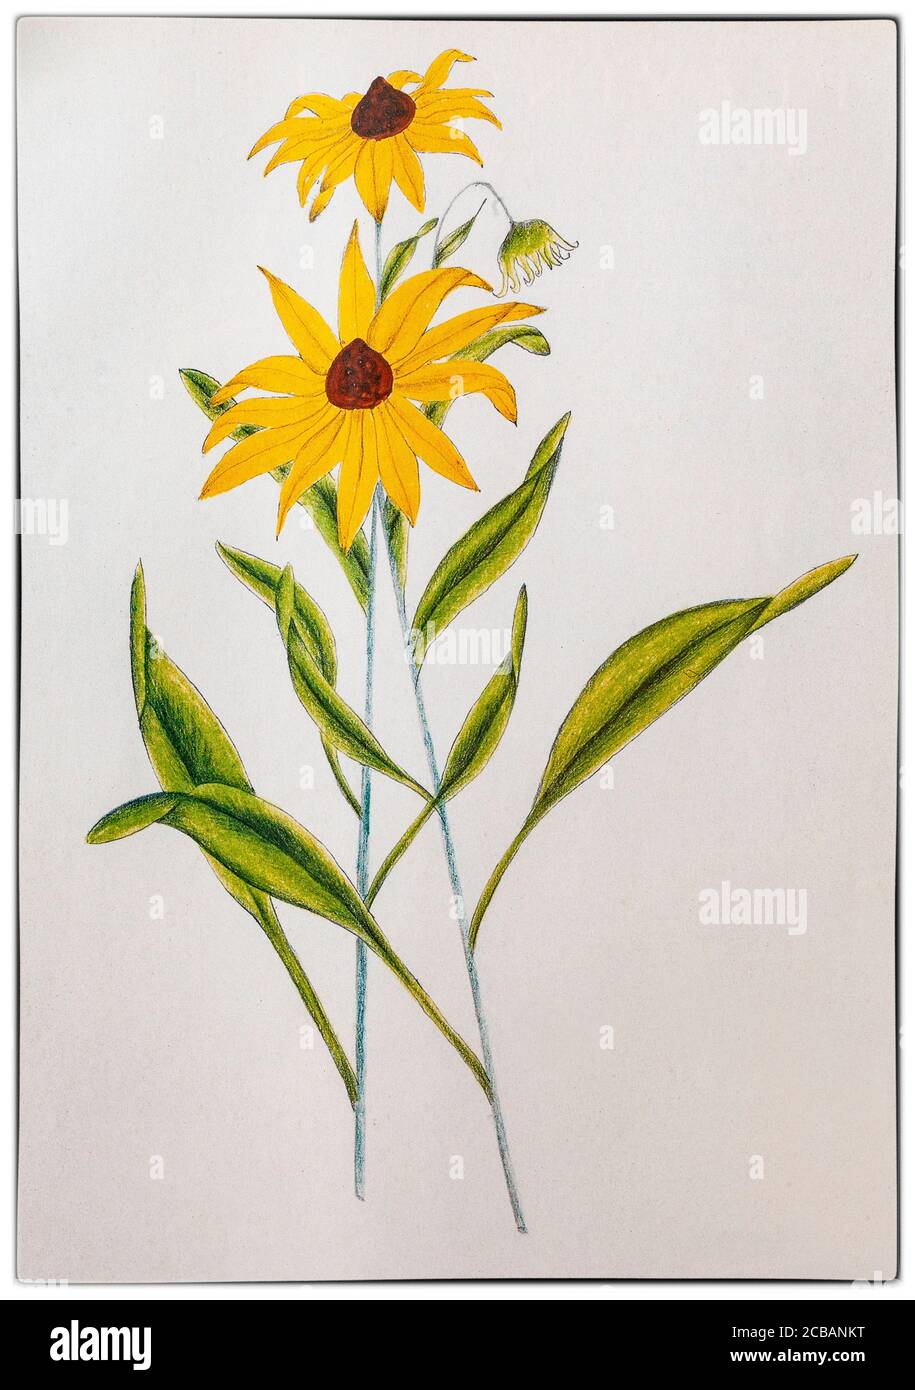 Rudbeckia laciniata, Coaka coneflower, ist eine Art der Aster-Familie (Asteraceae), die in Nordamerika beheimatet ist. Gezeichnet von Helena Sarle (1867–1956), einer amerikanischen Künstlerin, wurde sie 1882 mit fünfzehn Jahren Shaker und trat der Gemeinschaft in Canterbury, New Hampshire, bei. Sie litt unter schlechter Gesundheit und um ihr etwas Beschäftigung zu verschaffen, bat der ältere Shaker sie, einheimische Pflanzen für die Erstellung eines Lehrbuchs zu illustrieren, das in der Dorfschule verwendet werden sollte. Trotz keiner künstlerischen Ausbildung produzierte sie über 180 Zeichnungen und später zwei botanische Bücher. Stockfoto